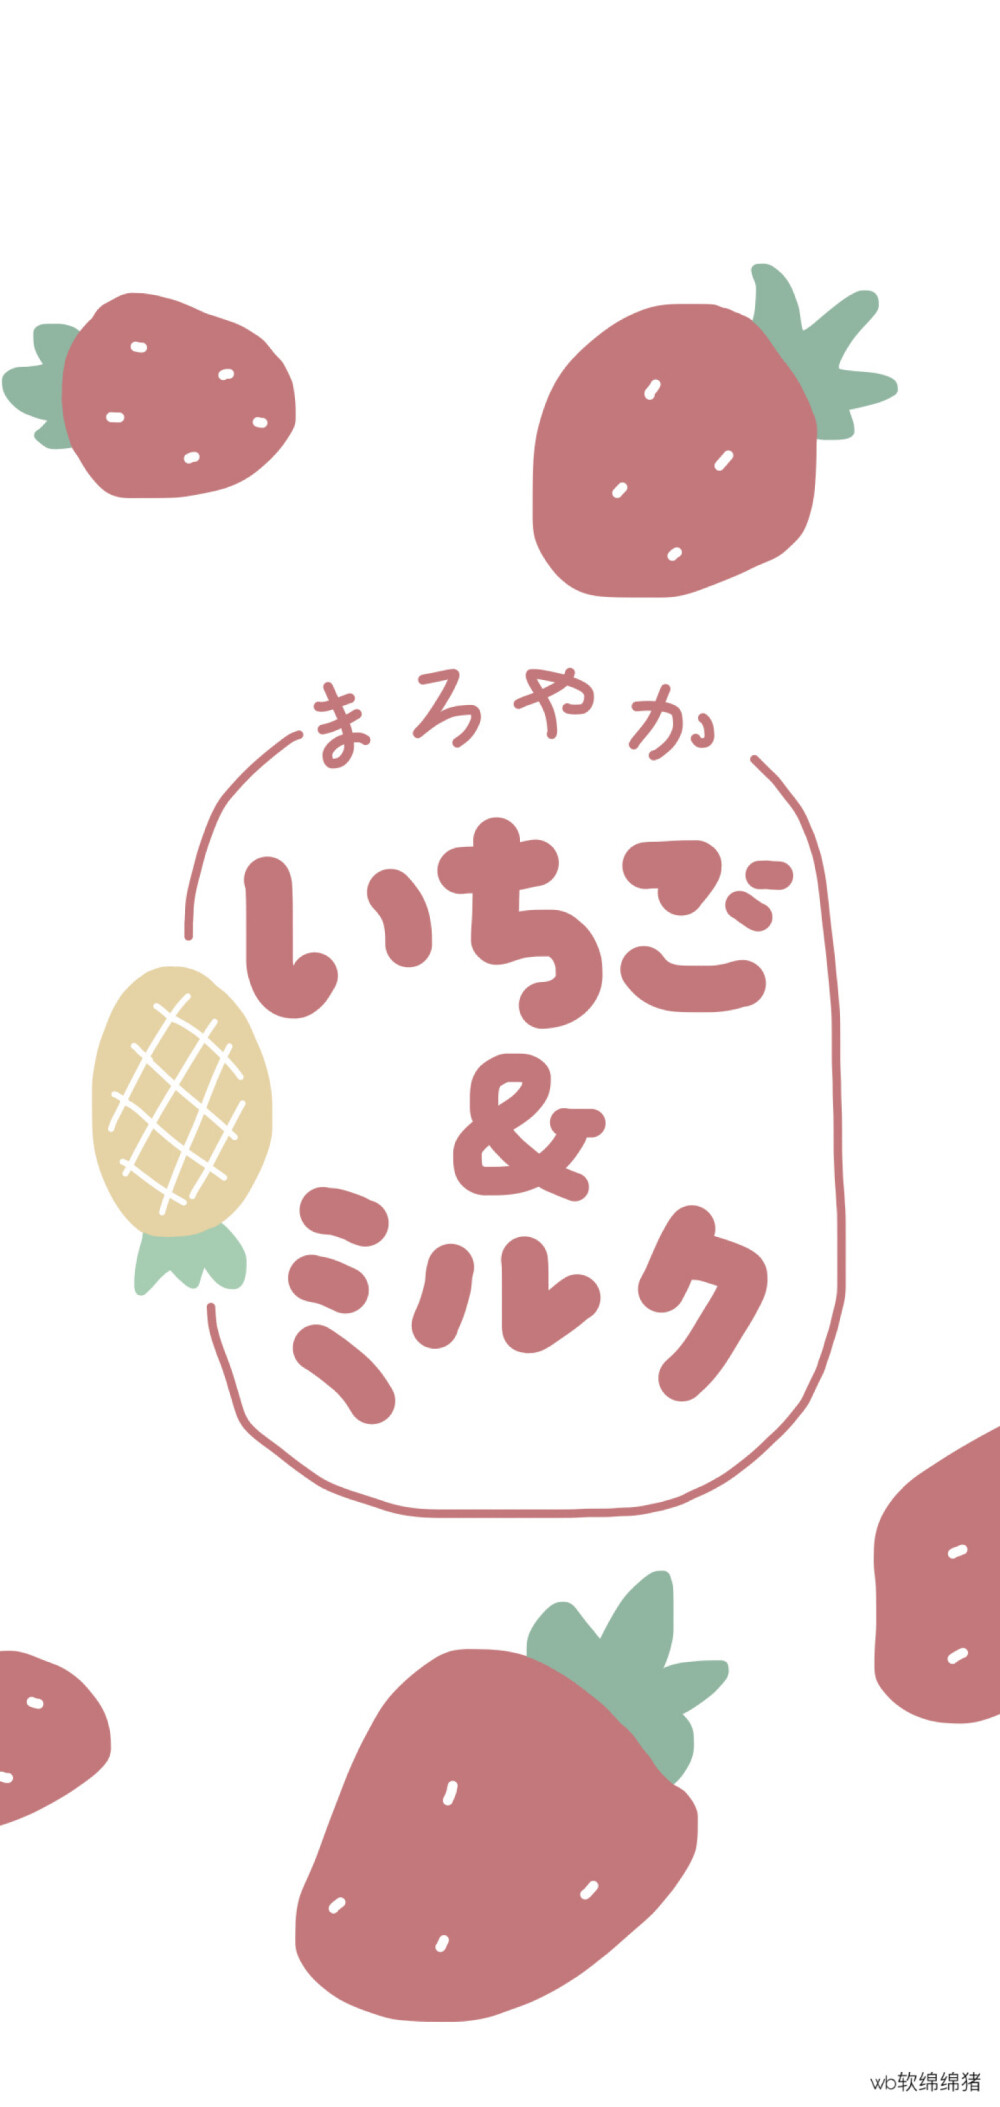 少女心壁纸 - 食物饮品插画 素材 ins 韩系 可爱 简约 手绘 动漫 锁屏